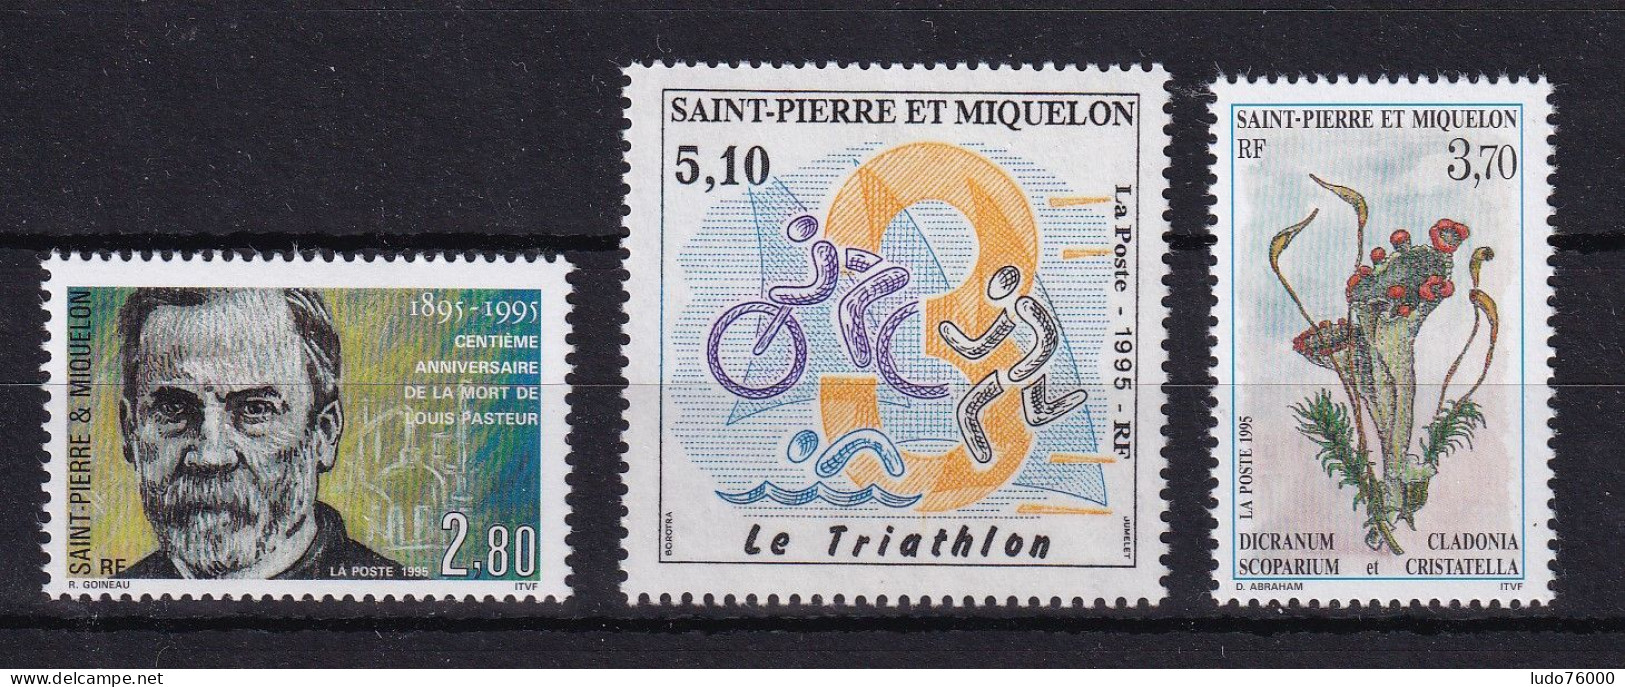 D 745 / ST PIERRE ET MIQUELON / N° 609/611 NEUF** COTE 5.60€ - Collections, Lots & Séries